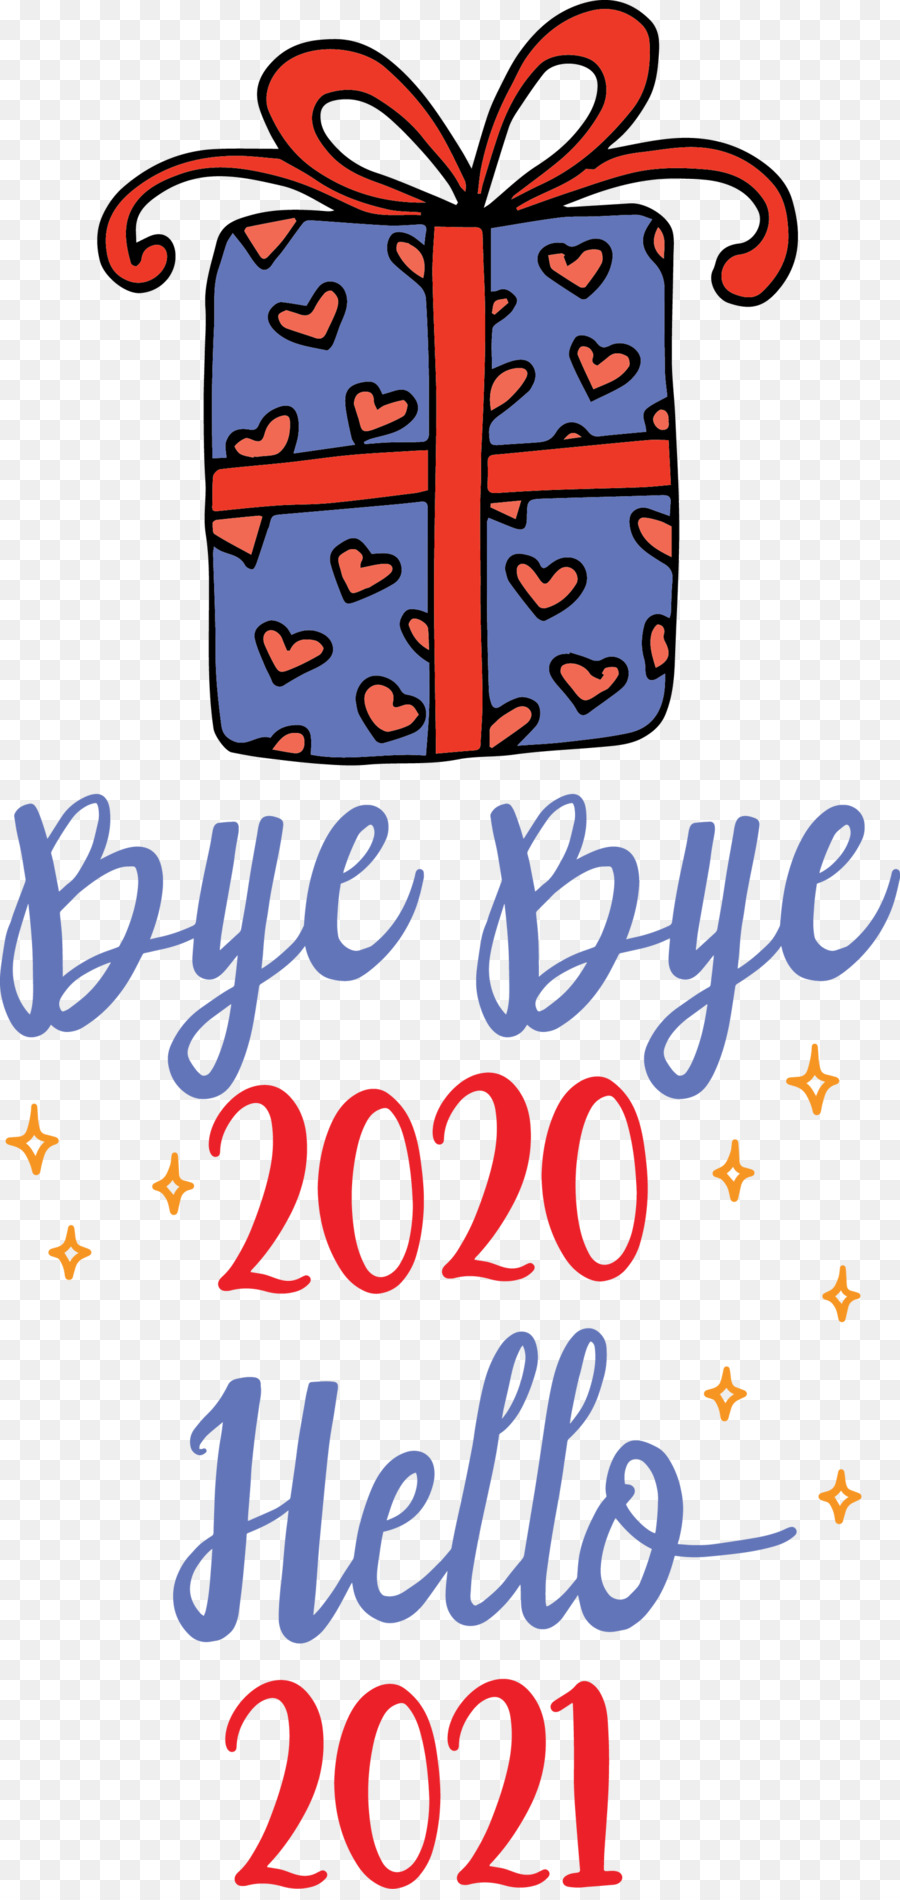 Chào năm 2021, tạm biệt năm 2020 - 